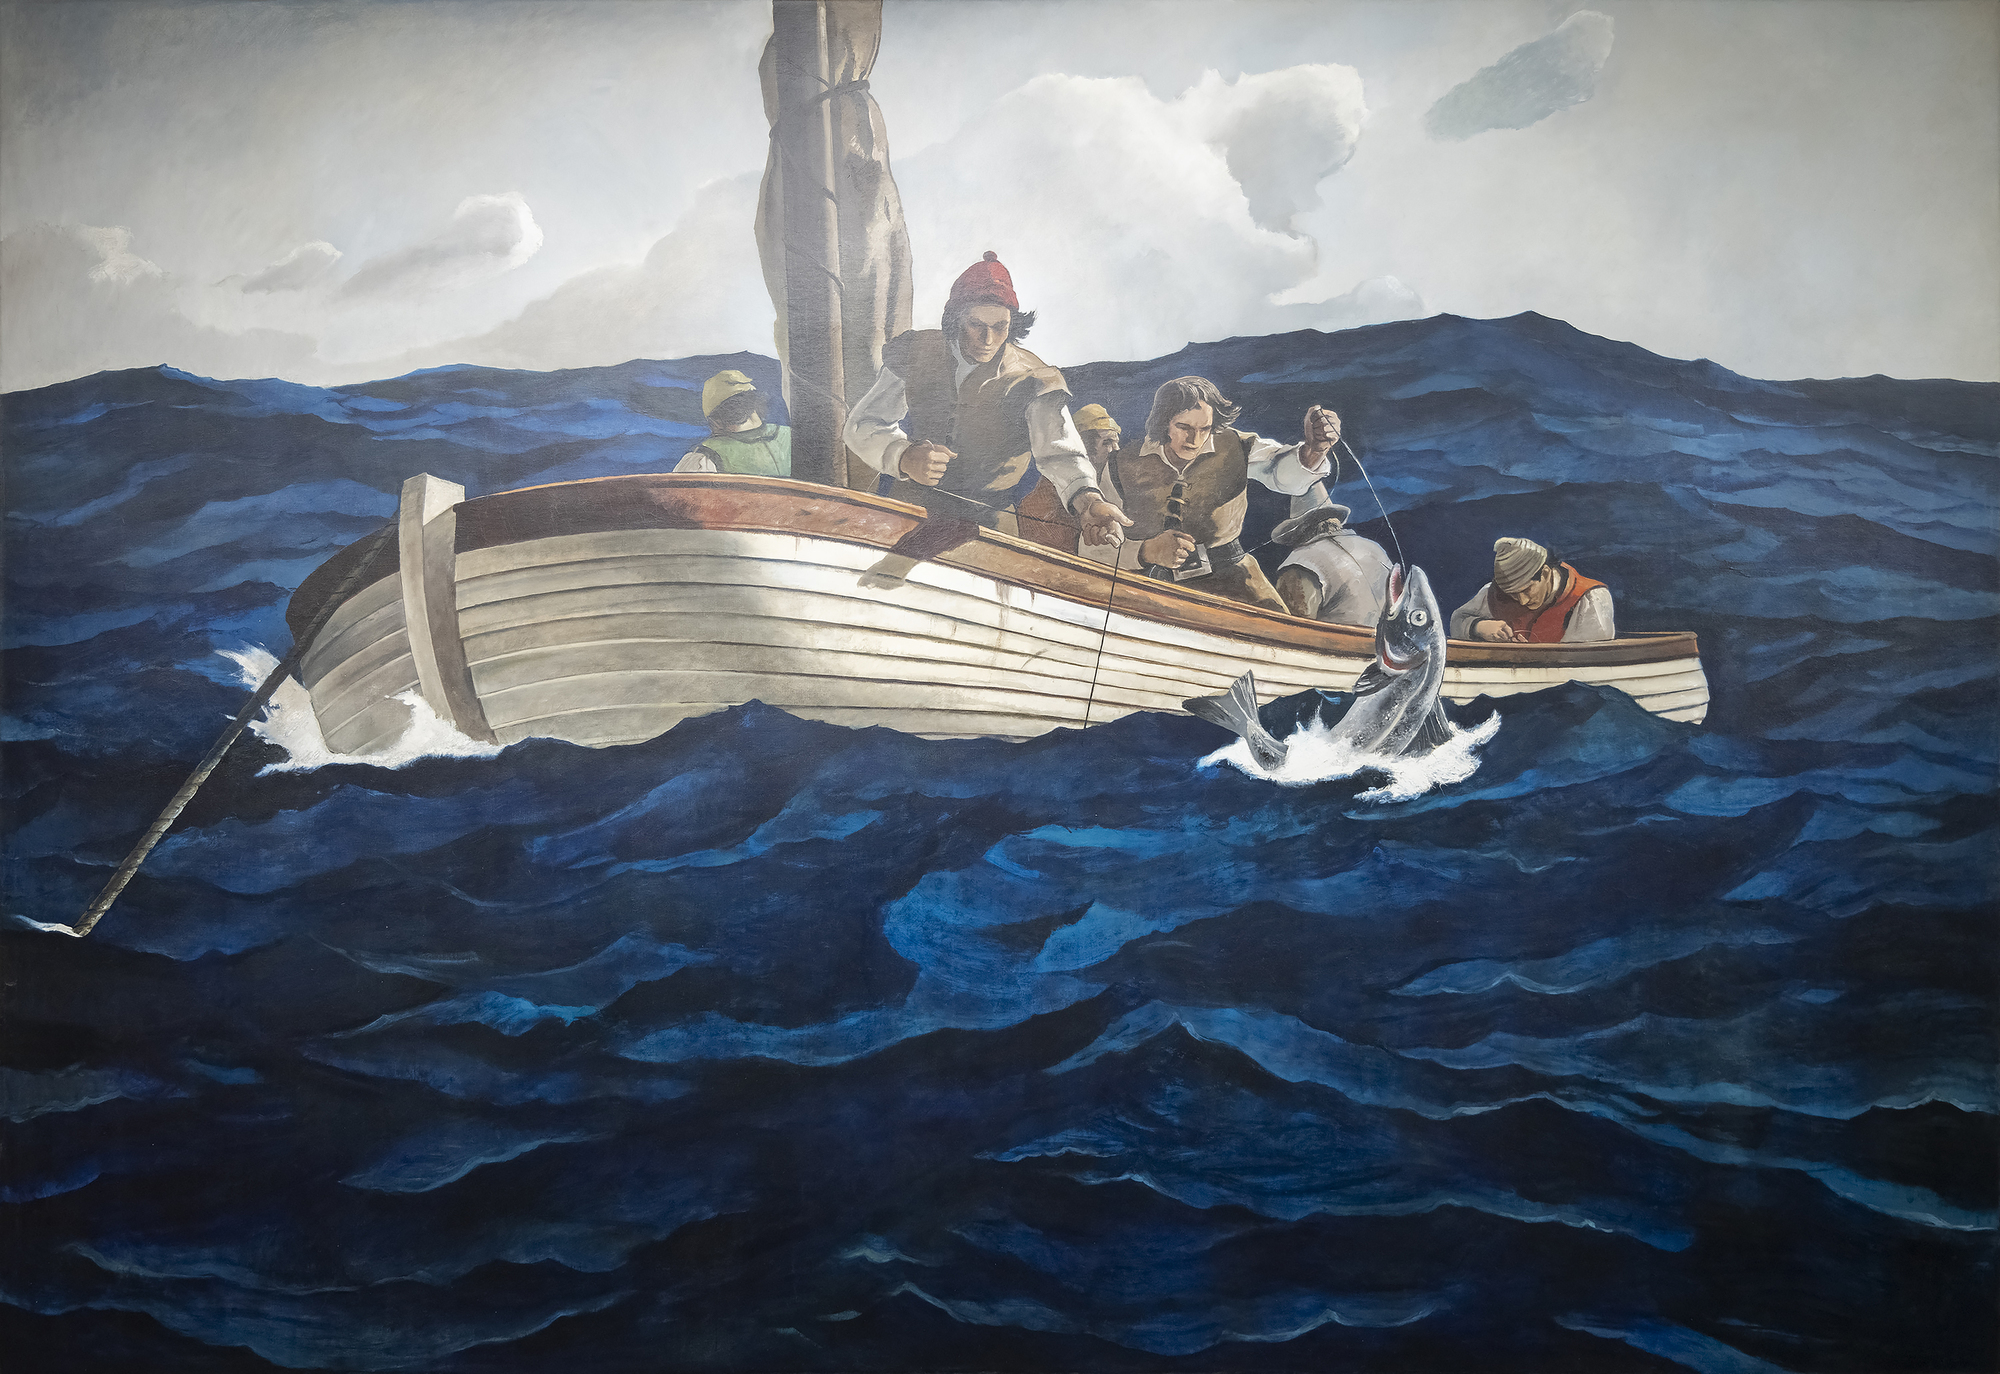 Según el catálogo razonado recopilado por el Brandywine River Museum of Art, el dibujo preliminar de Puritan Cod Fishers fue realizado por N. C. Wyeth antes de su muerte, en octubre de 1945. La entrada registra una imagen del boceto, así como las inscripciones del artista y su título, Puritan Cod Fishers, caracterizado por el catálogo como "alternativo". En cualquier caso, el lienzo a gran escala es una obra única que Andrew Wyeth recordaría más tarde que fue pintada únicamente por su mano, una colaboración delimitada del diseño y la composición del padre llevada a buen término por la ejecución de un hijo notable. Para Andrew, debió de ser una experiencia profundamente sentida y emotiva. Dada la atención de su padre a los detalles y la autenticidad, las líneas de la pequeña embarcación de vela representan un chalote, en uso durante el siglo XVI. Por otra parte, es probable que Andrew intensificara los matices del inquieto mar más de lo que lo hubiera hecho su padre, una elección que realza adecuadamente la peligrosa naturaleza de la tarea.